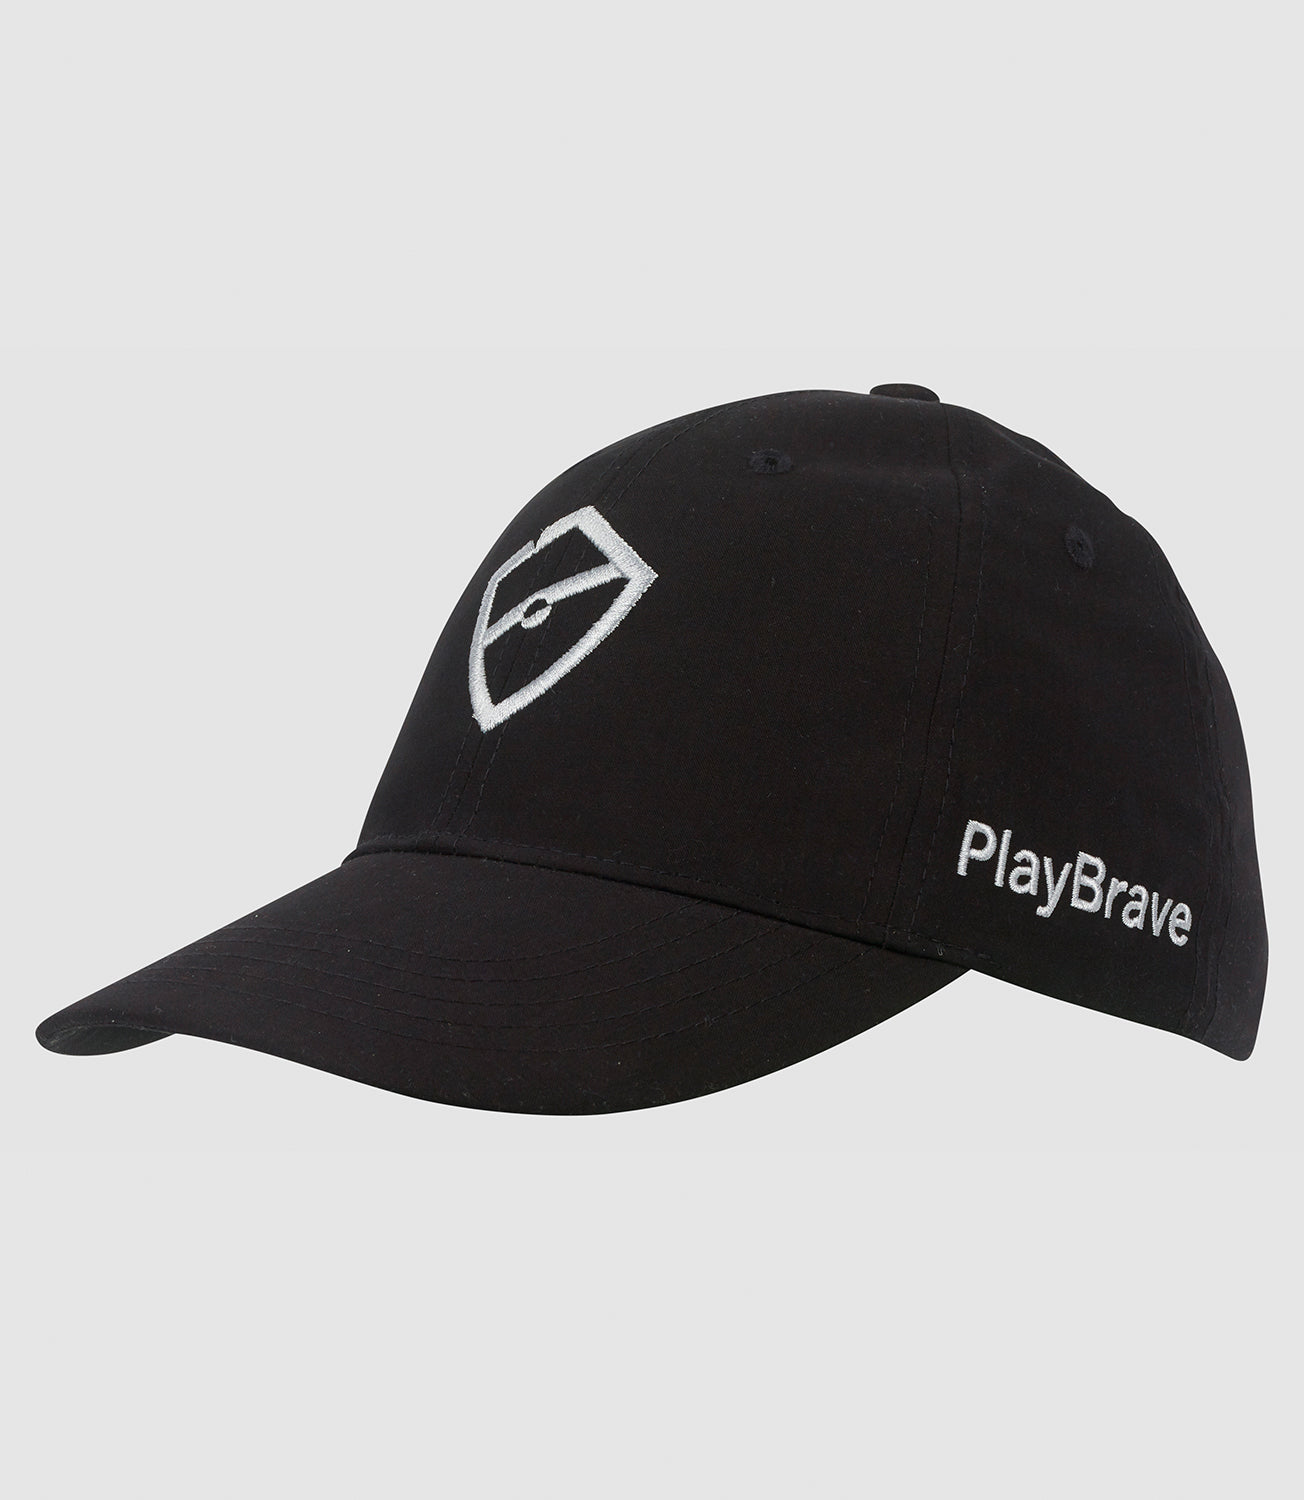 Tennis Hats/Caps -Default-Stealth Cap-Black/Silver-PlayBrave Sports UK